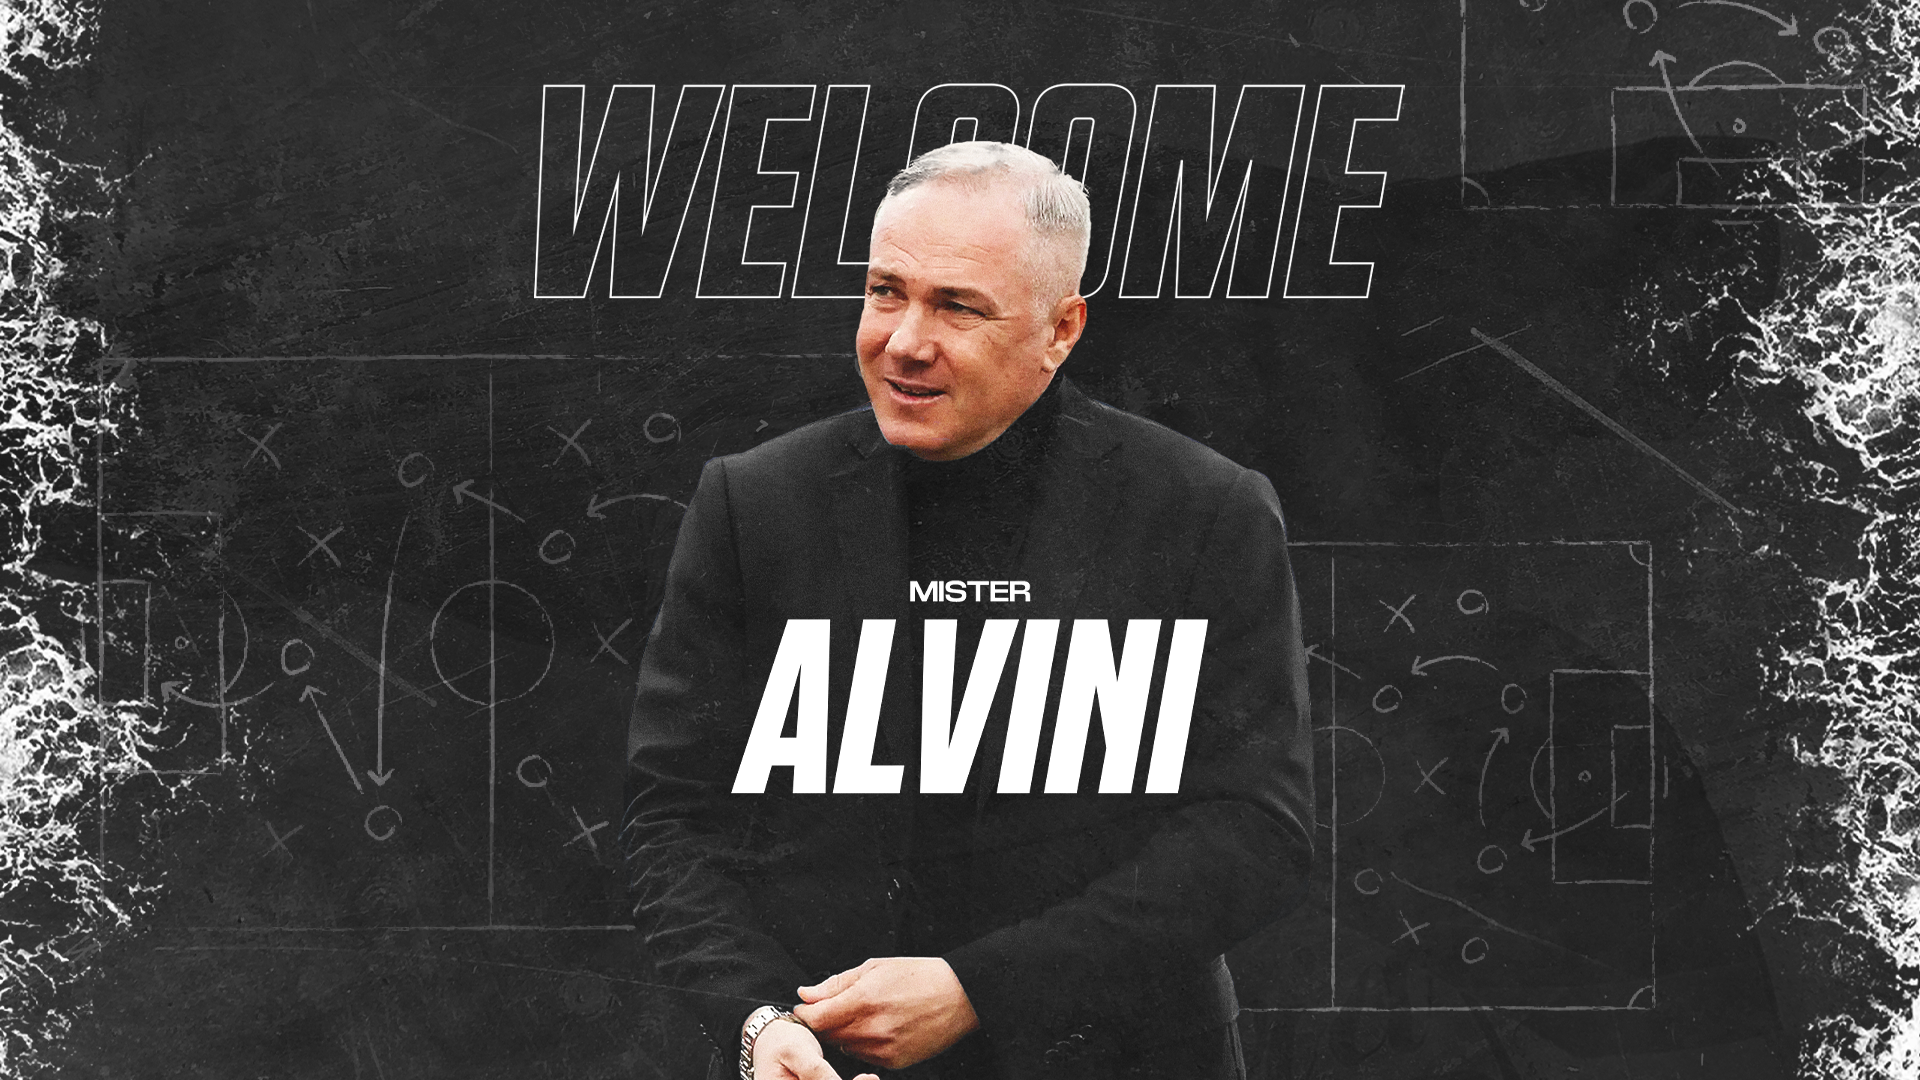 Ufficiale | Massimiliano Alvini è il nuovo allenatore dello Spezia Calcio